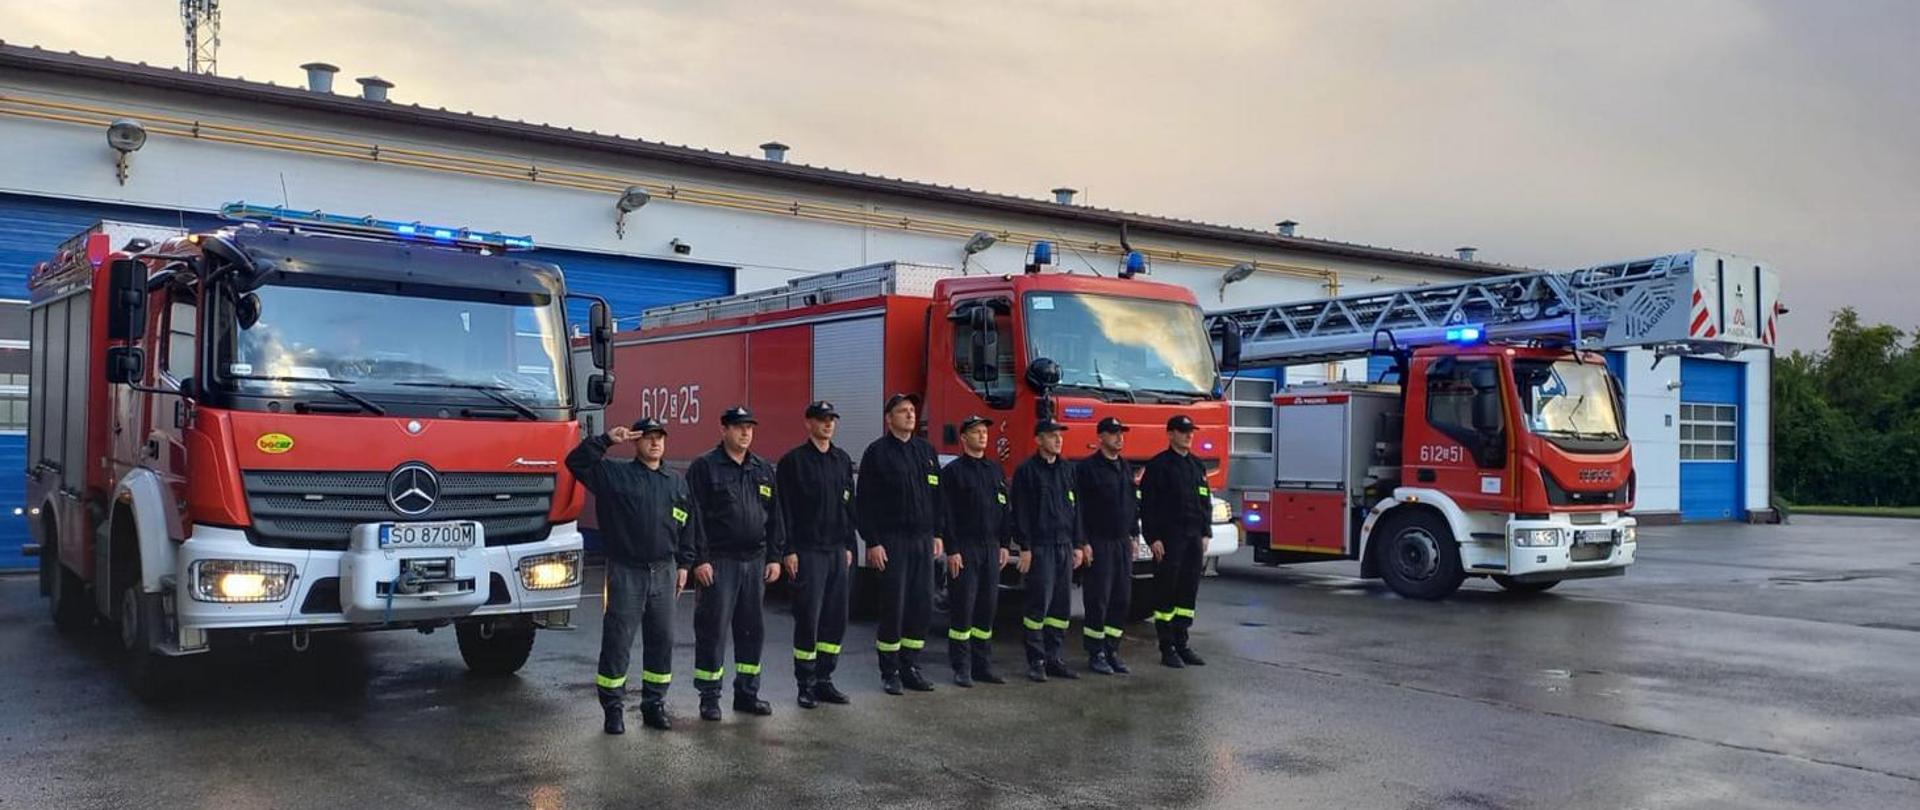 Strażacy Komendy Miejskiej PSP w Sosnowcu ustawieni w szeregu w umundurowaniu koszarowym przed samochodami ratowniczo-gaśniczymi z włączoną sygnalizacją świetlną. Strażacy oddają hołd zmarłemu strażakowi.